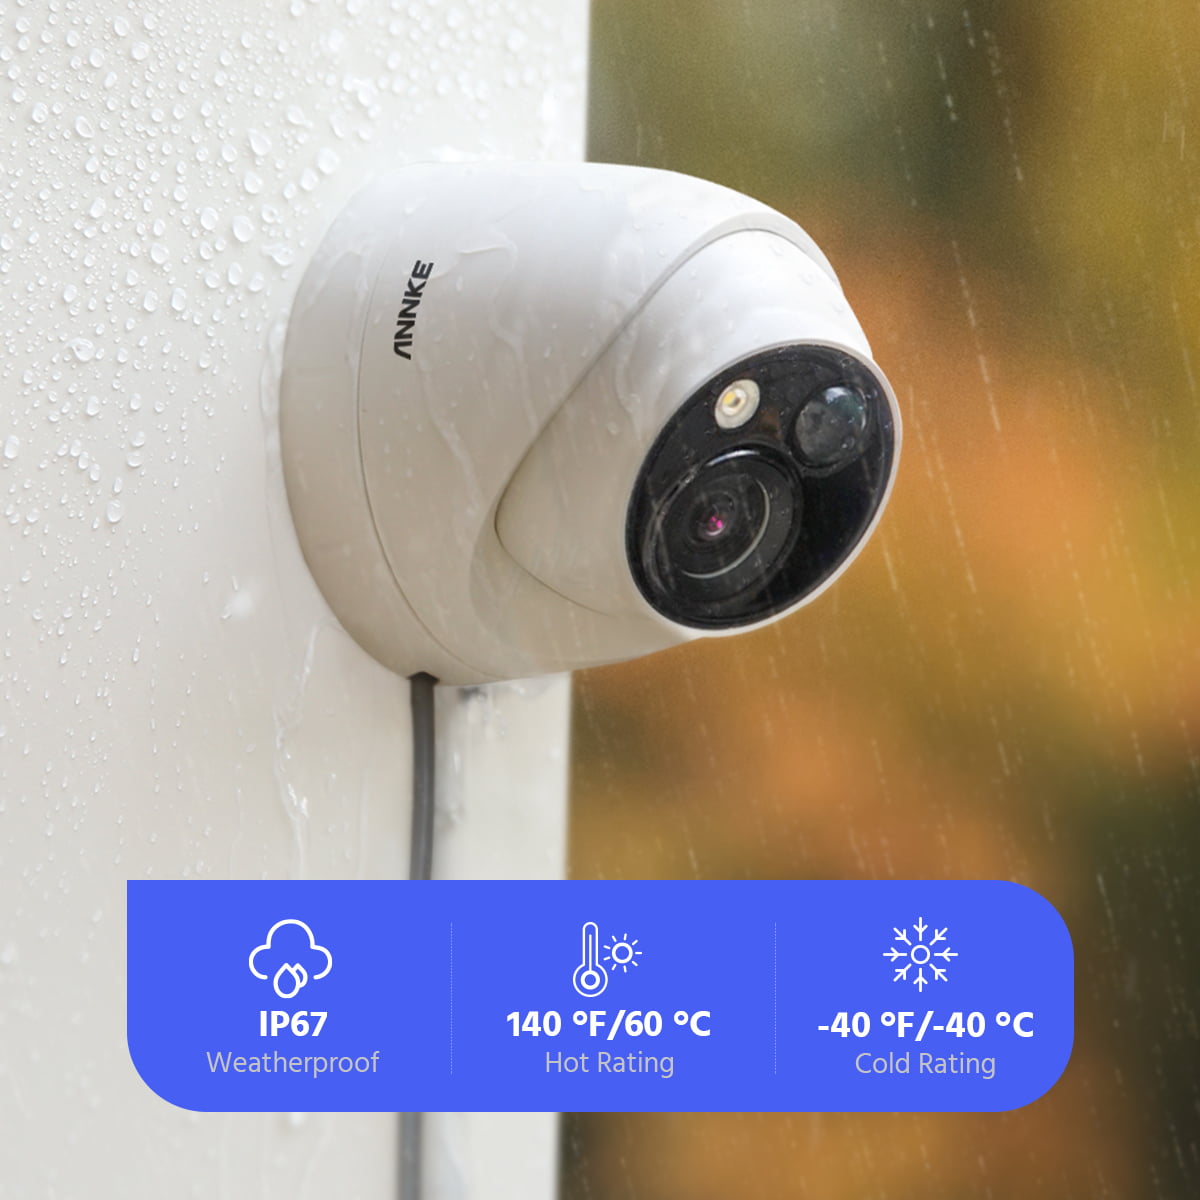 ANNKE Kit Caméra de Surveillance Exterieure 5MP Lite H.265+ DVR